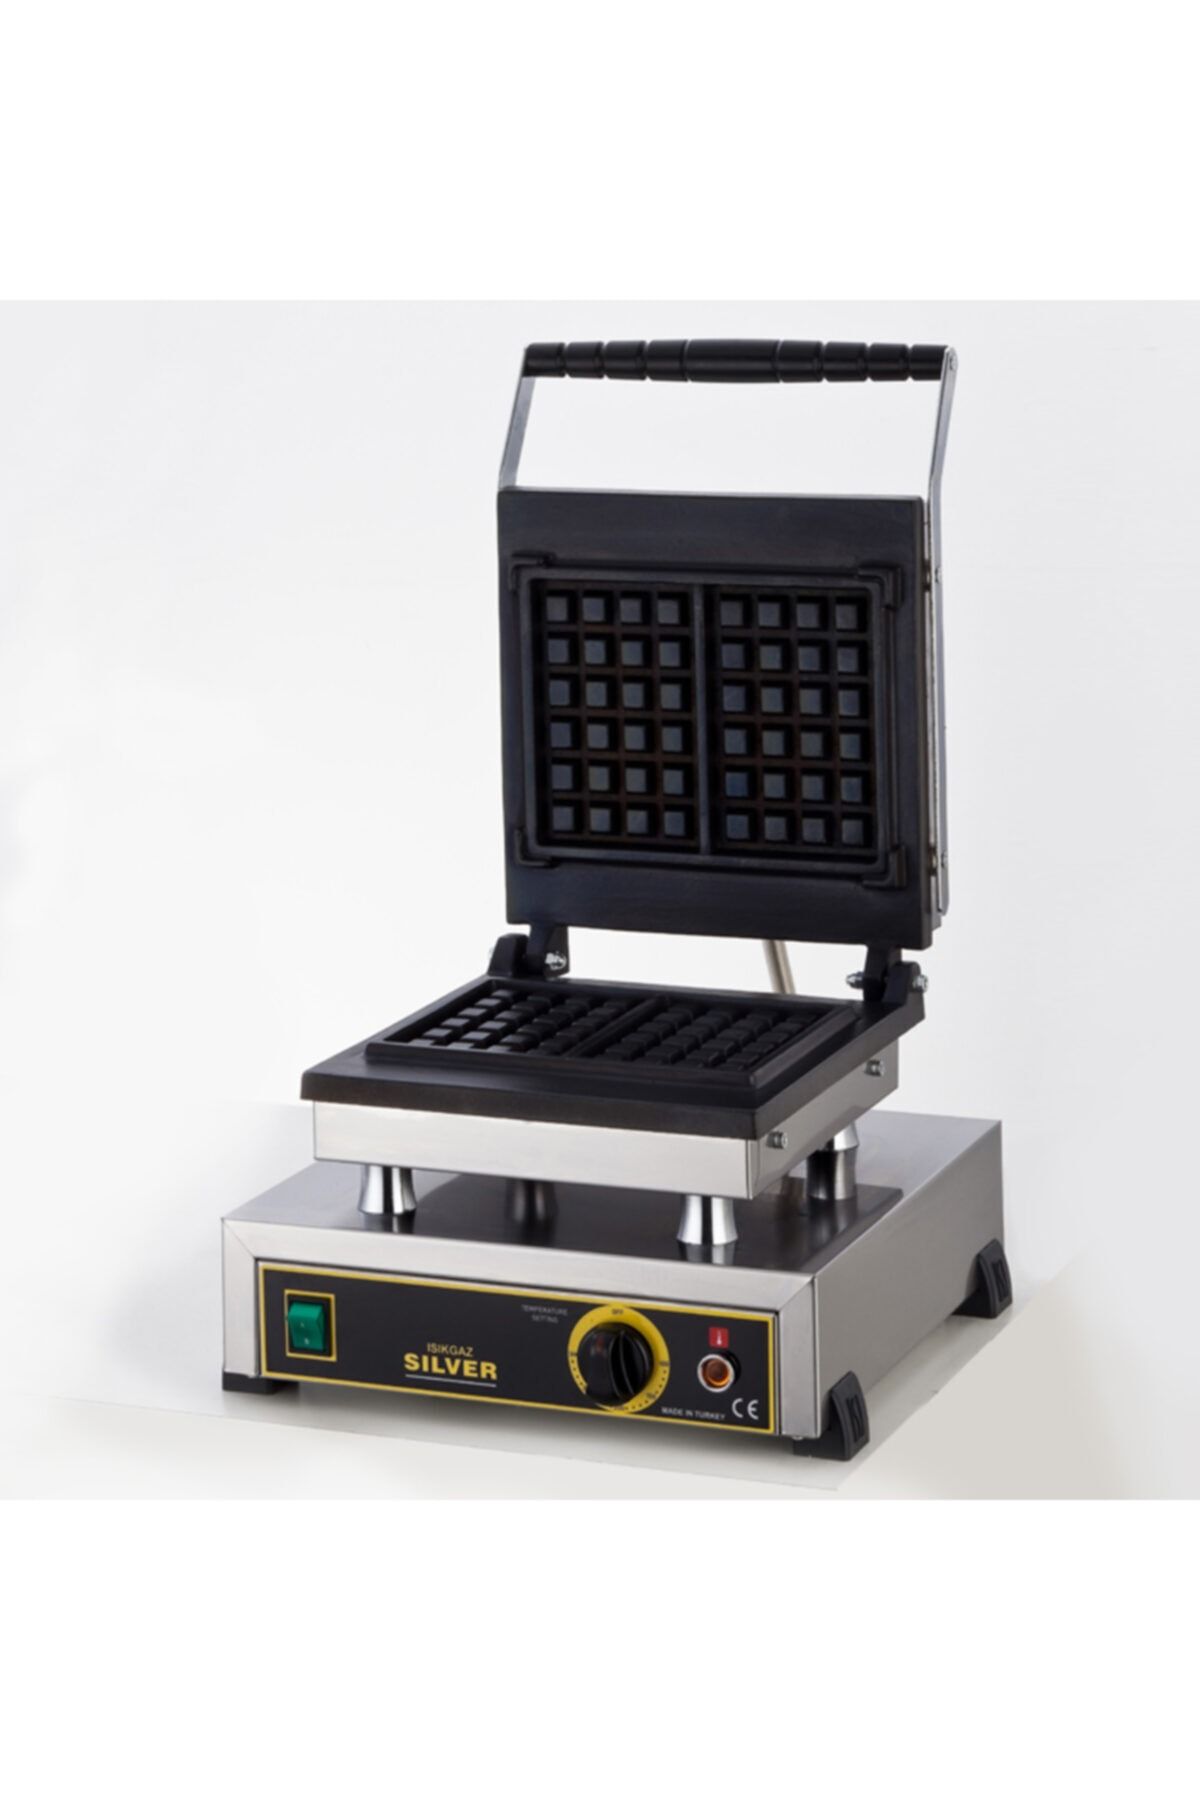 Işıkgaz Tekli Kare Waffle Makinası Silver Profesyonel